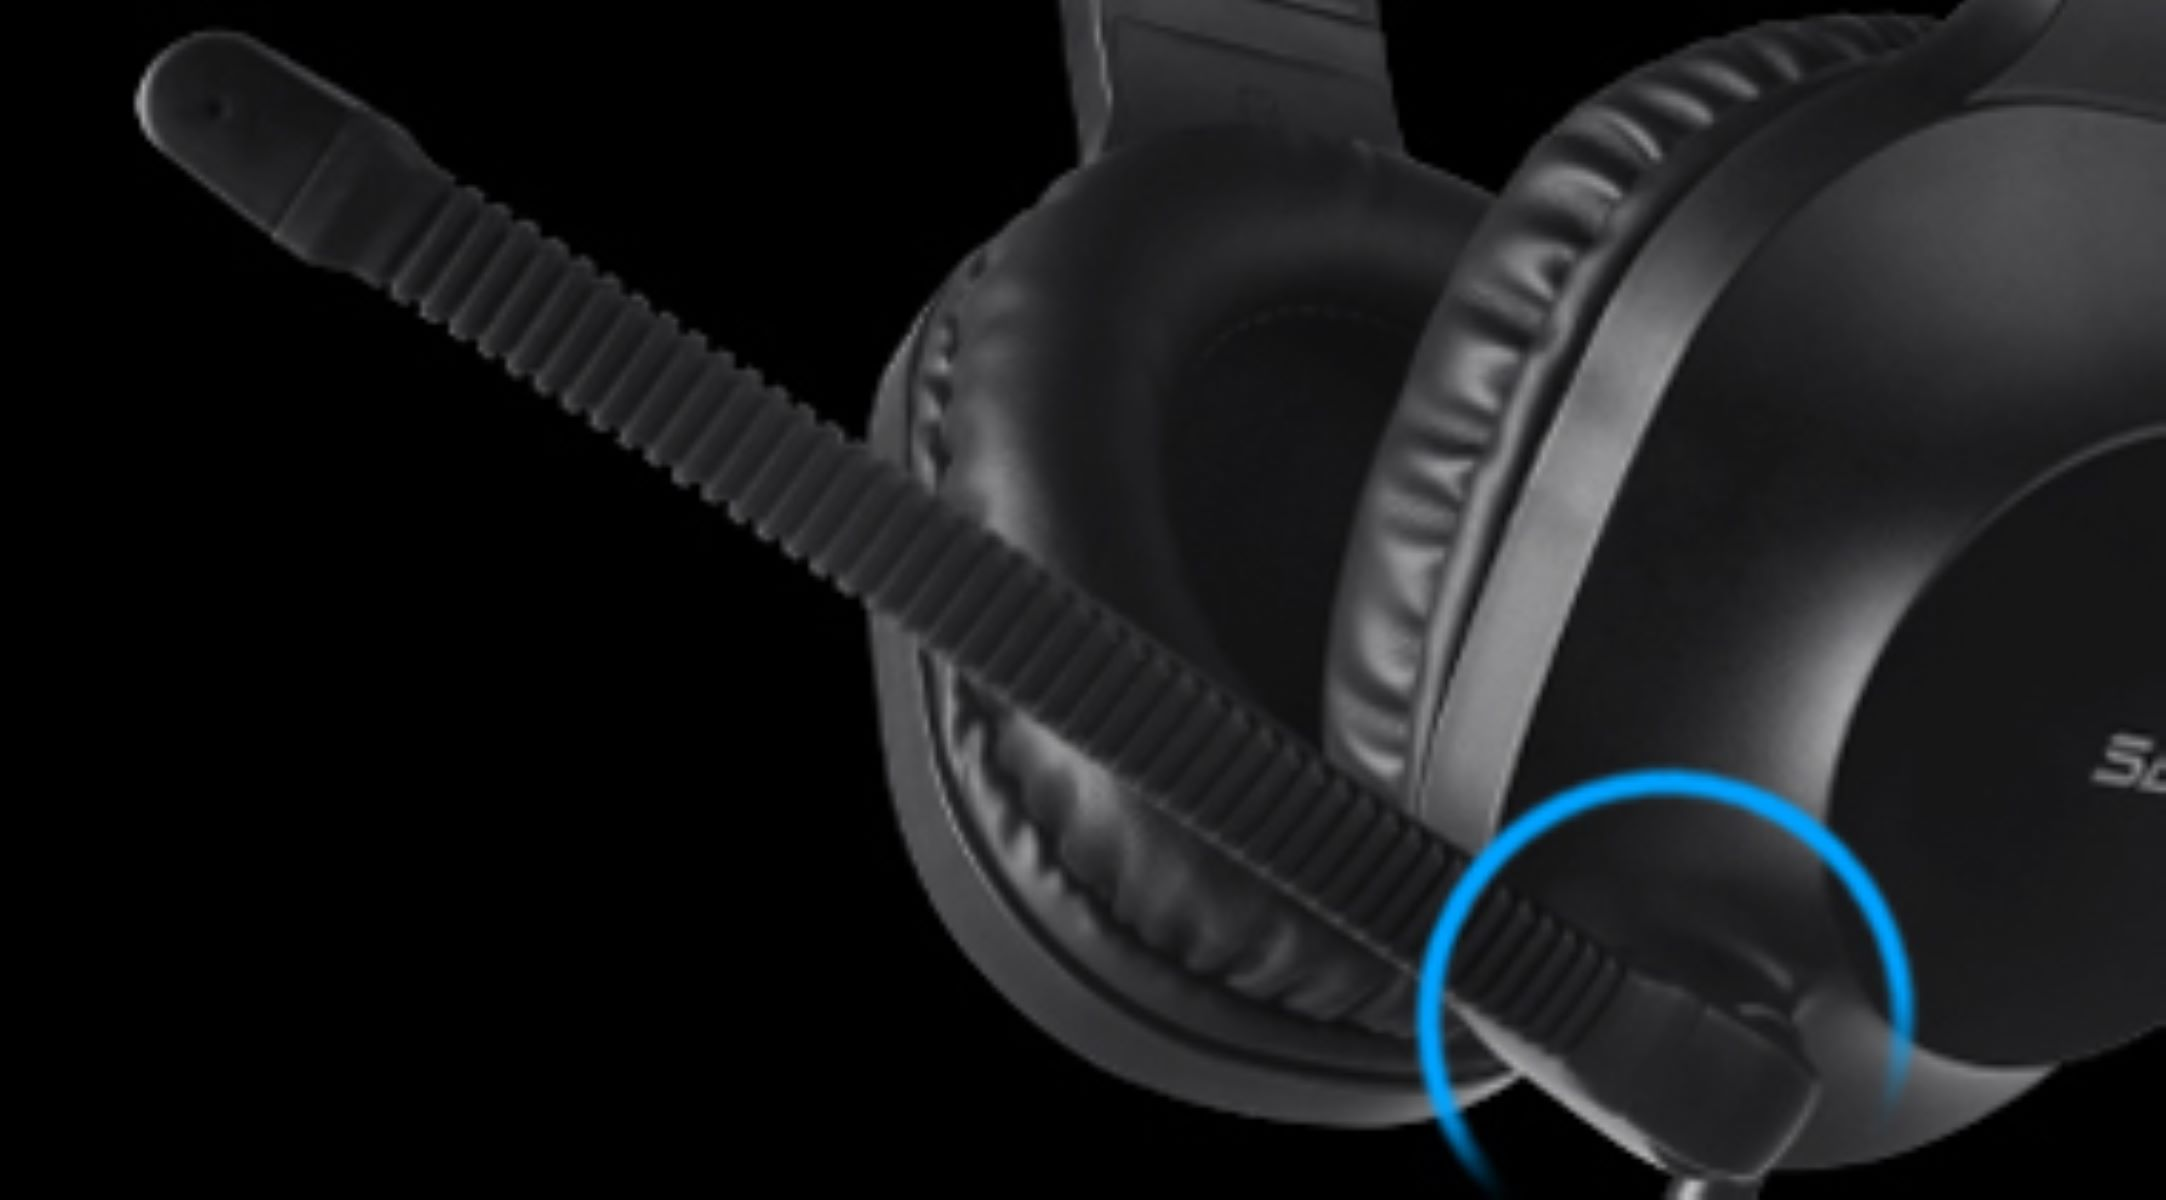 SADES Spirits SA-721, Over-ear blau Gaming-Headset